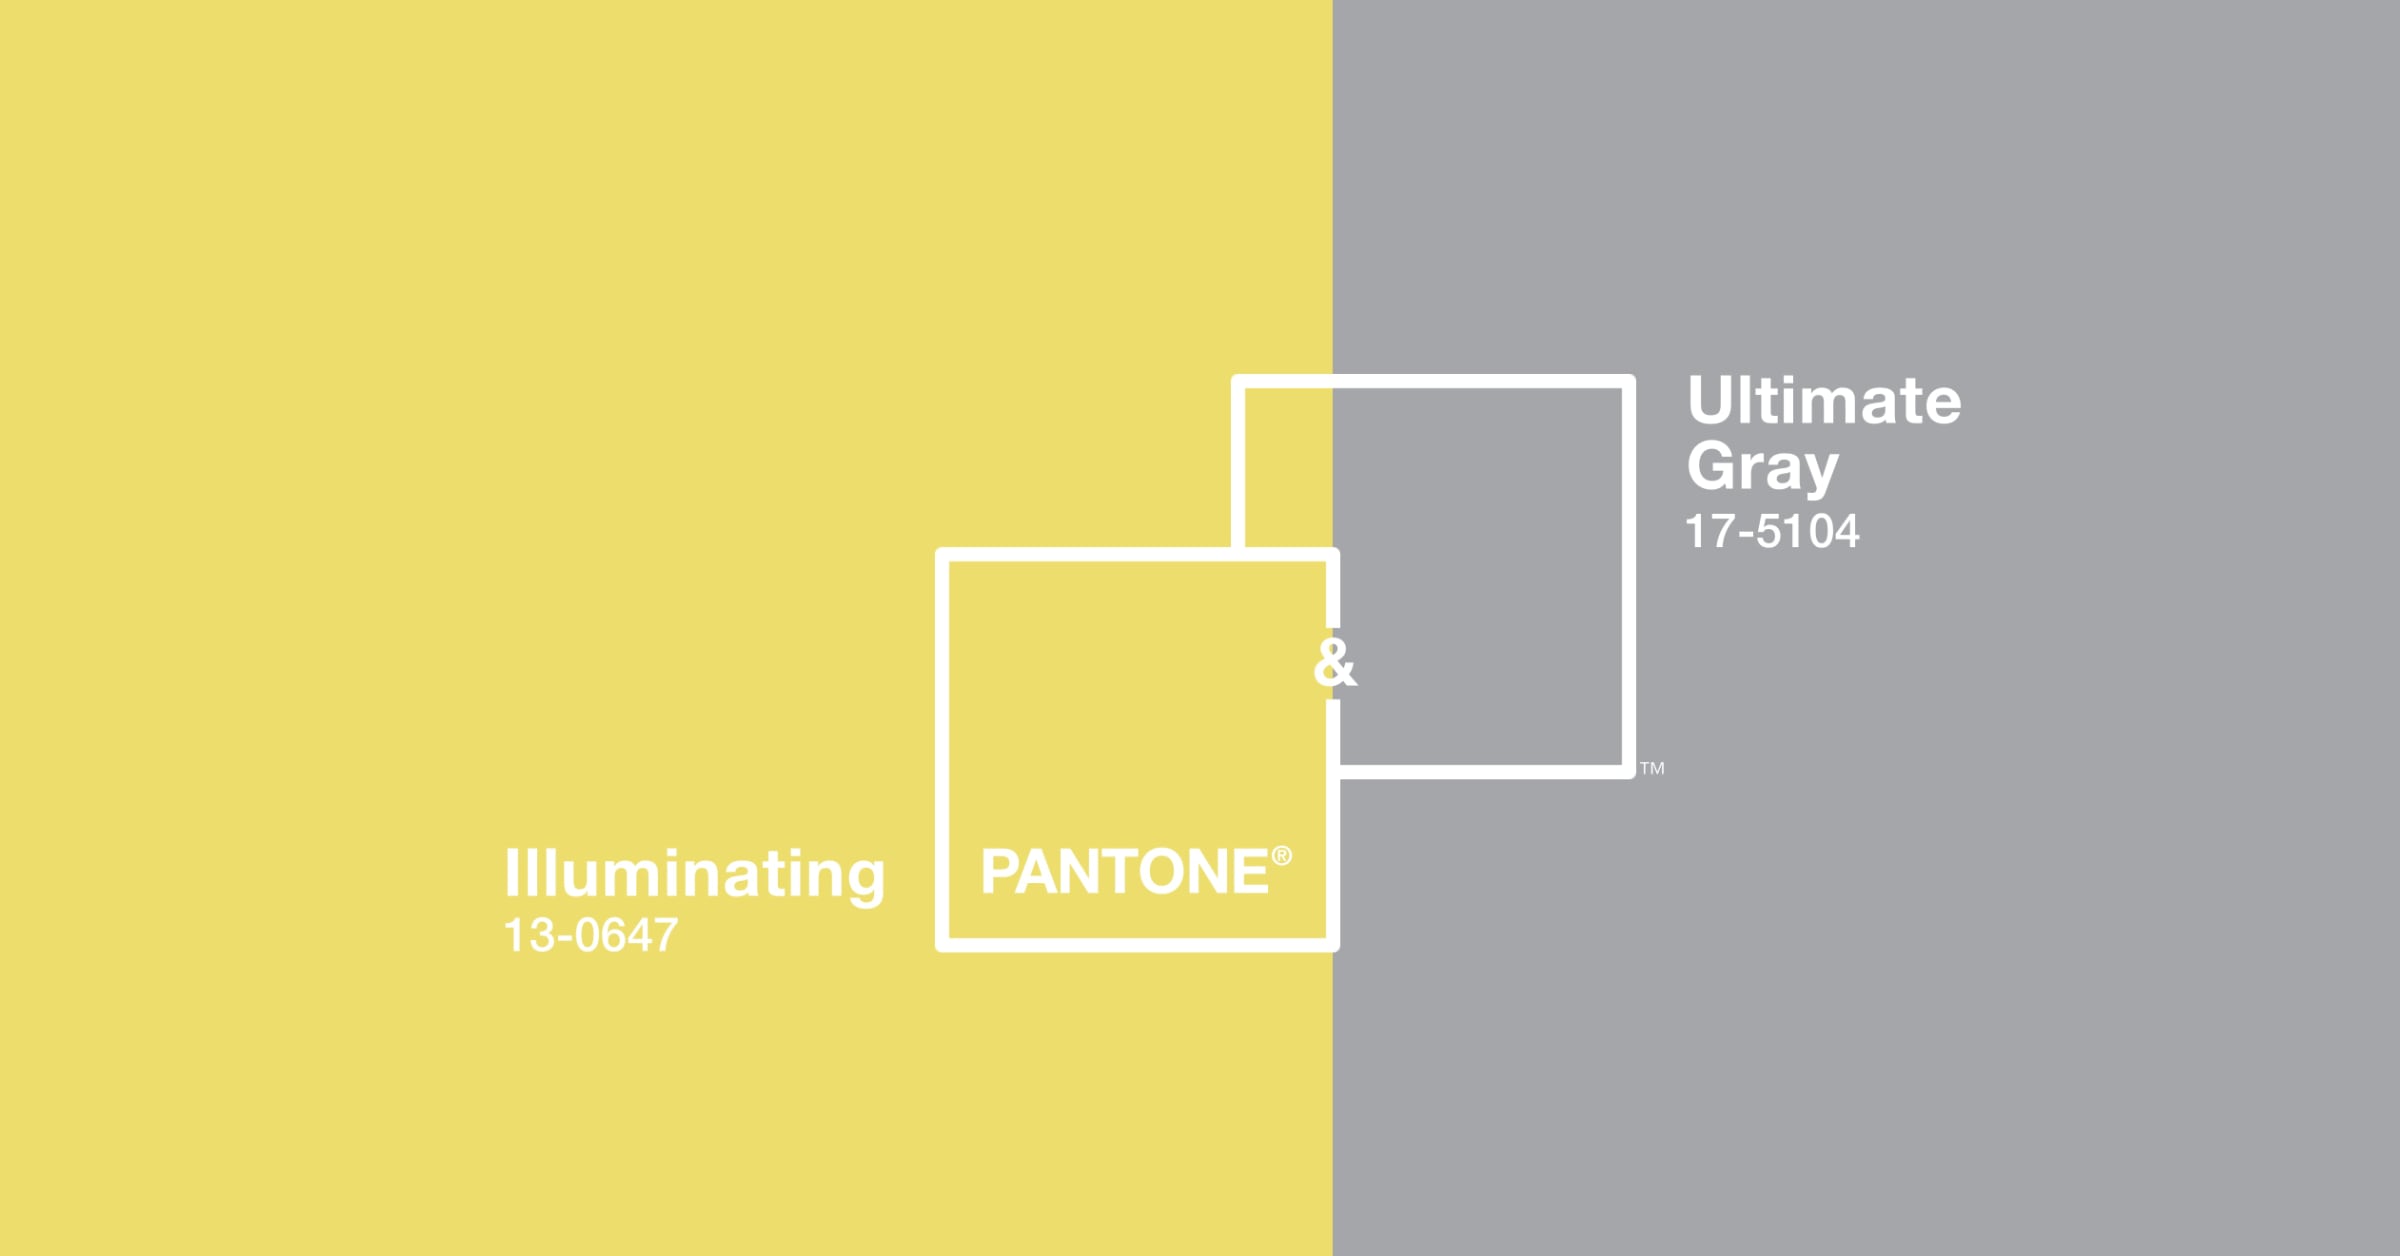 “Illuminating + Ultimate Gray” สี Pantone แห่งปี 2021  สื่อความหวัง-ความแข็งแกร่ง หลังผ่านวิกฤต